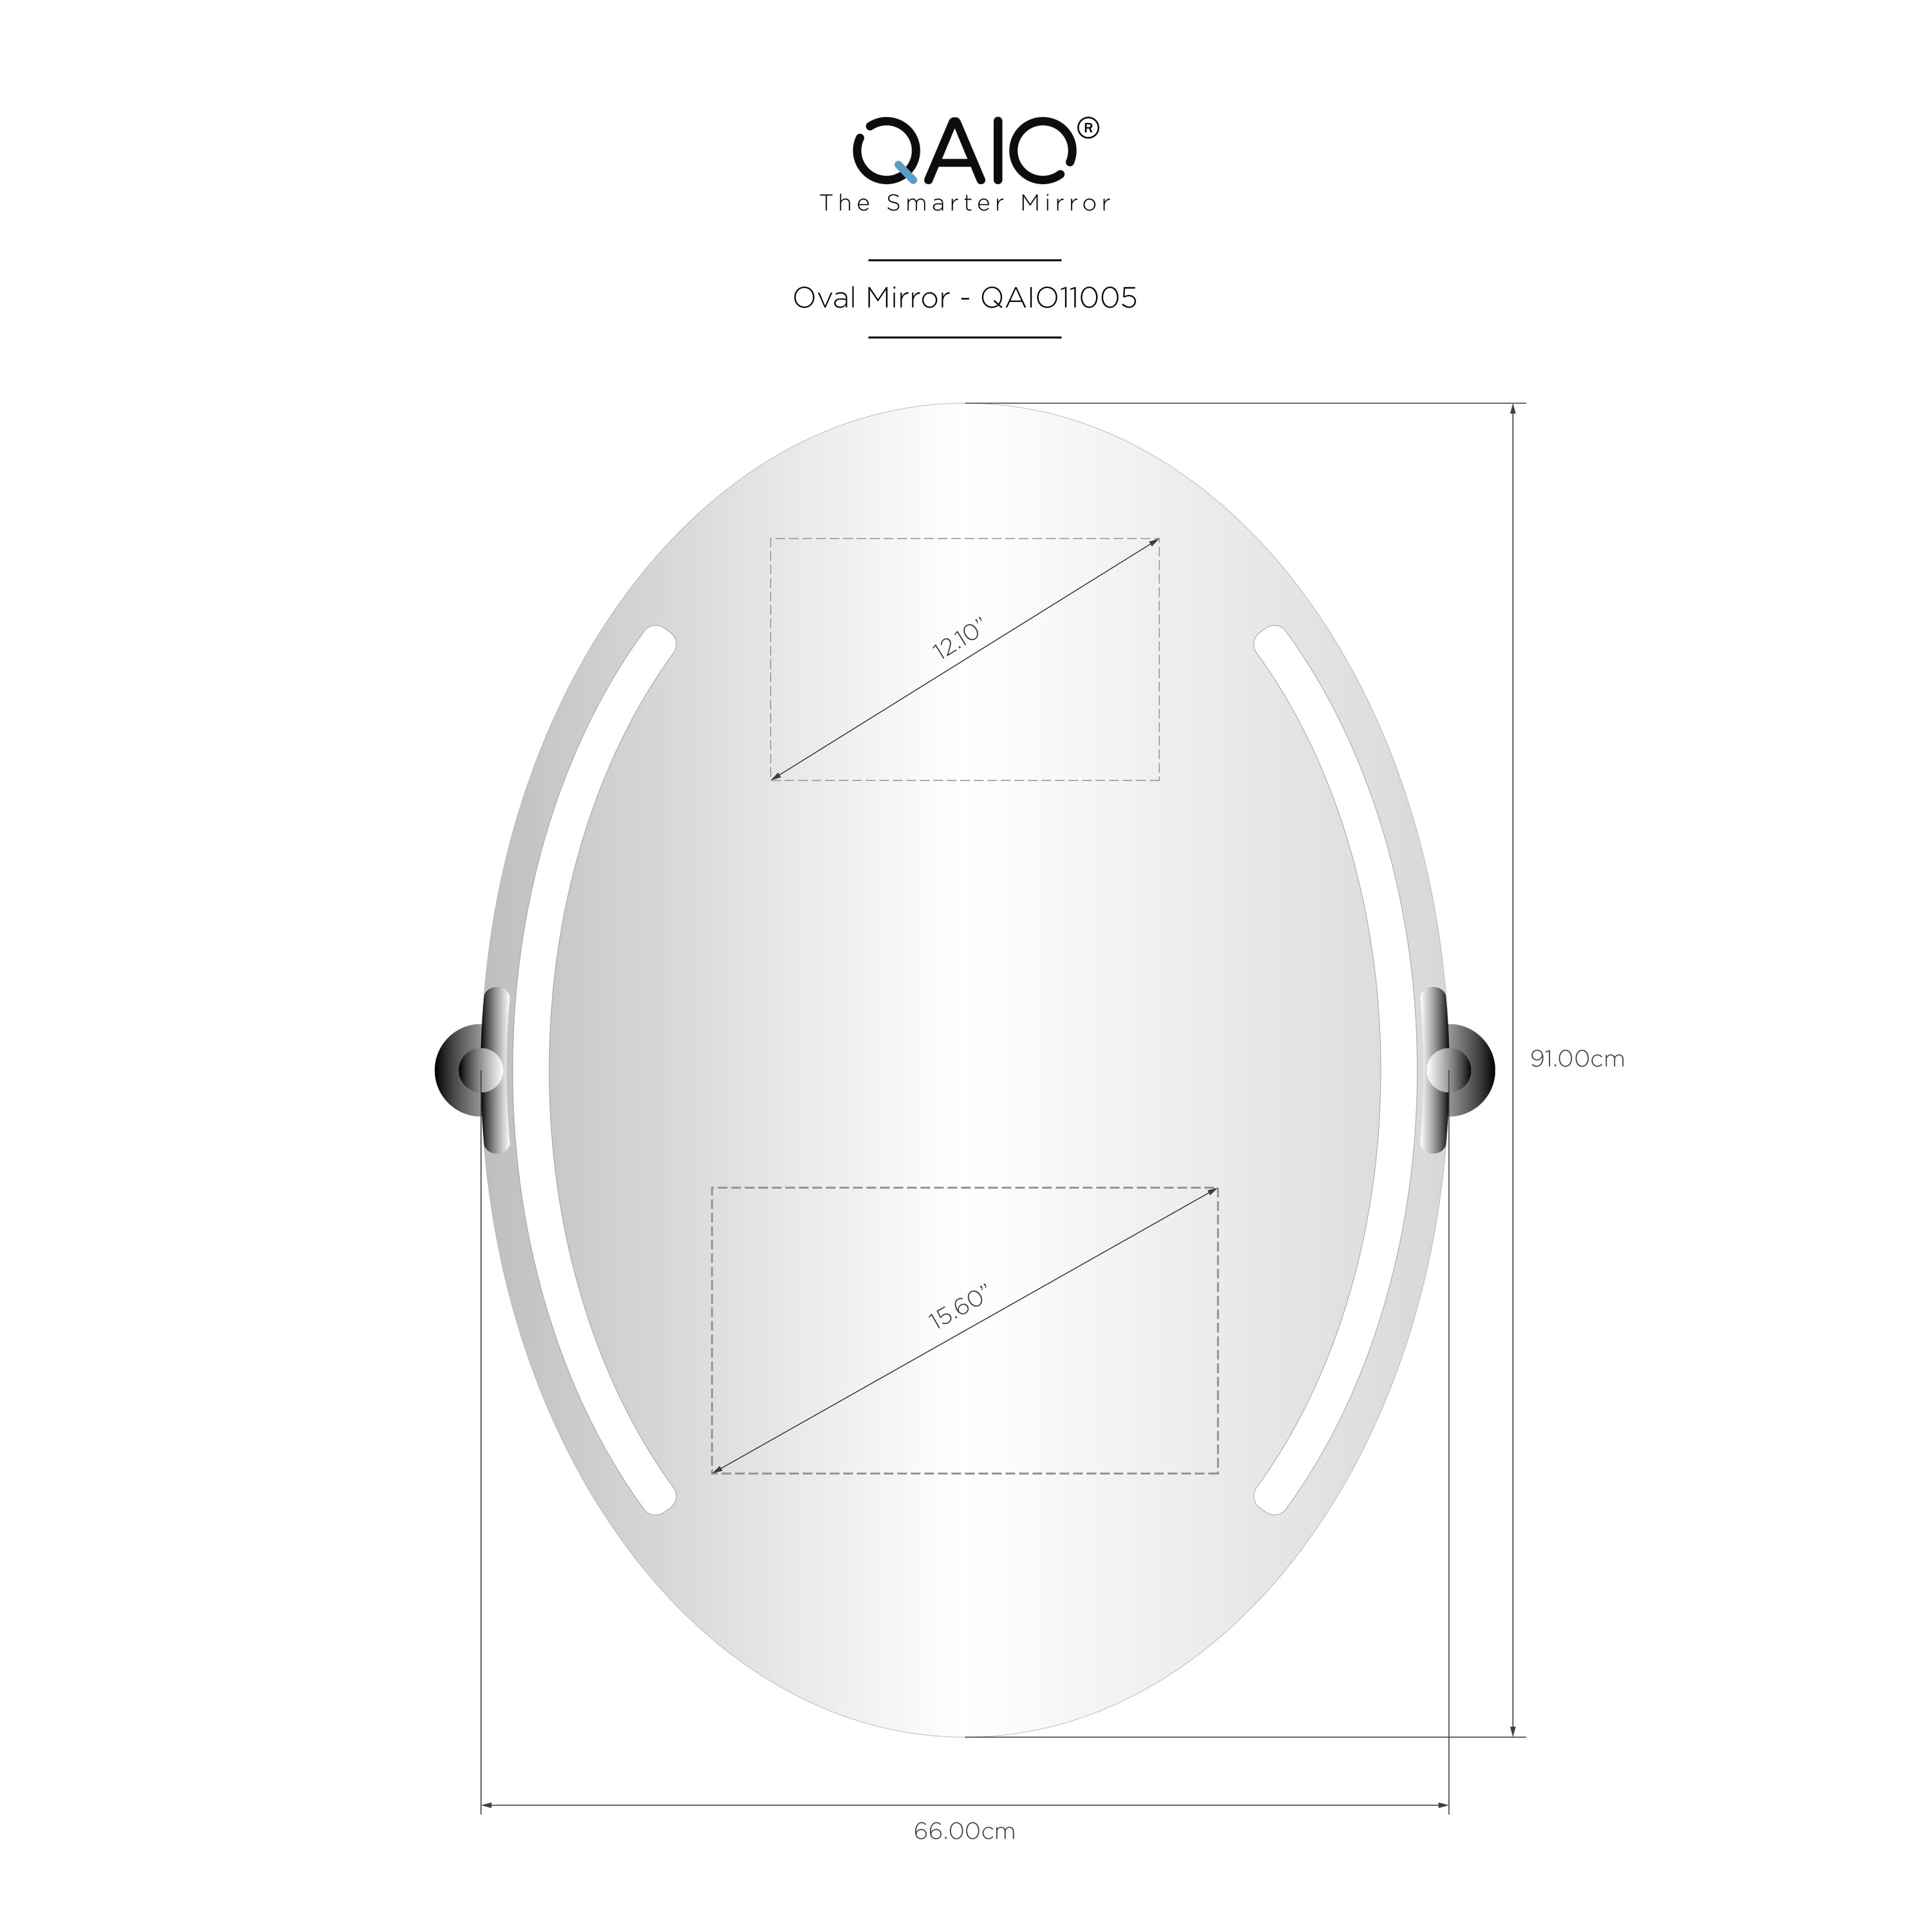 QAIO Oval  66cm width x 91cm height, with 15.6”  TV (QAIO11005)